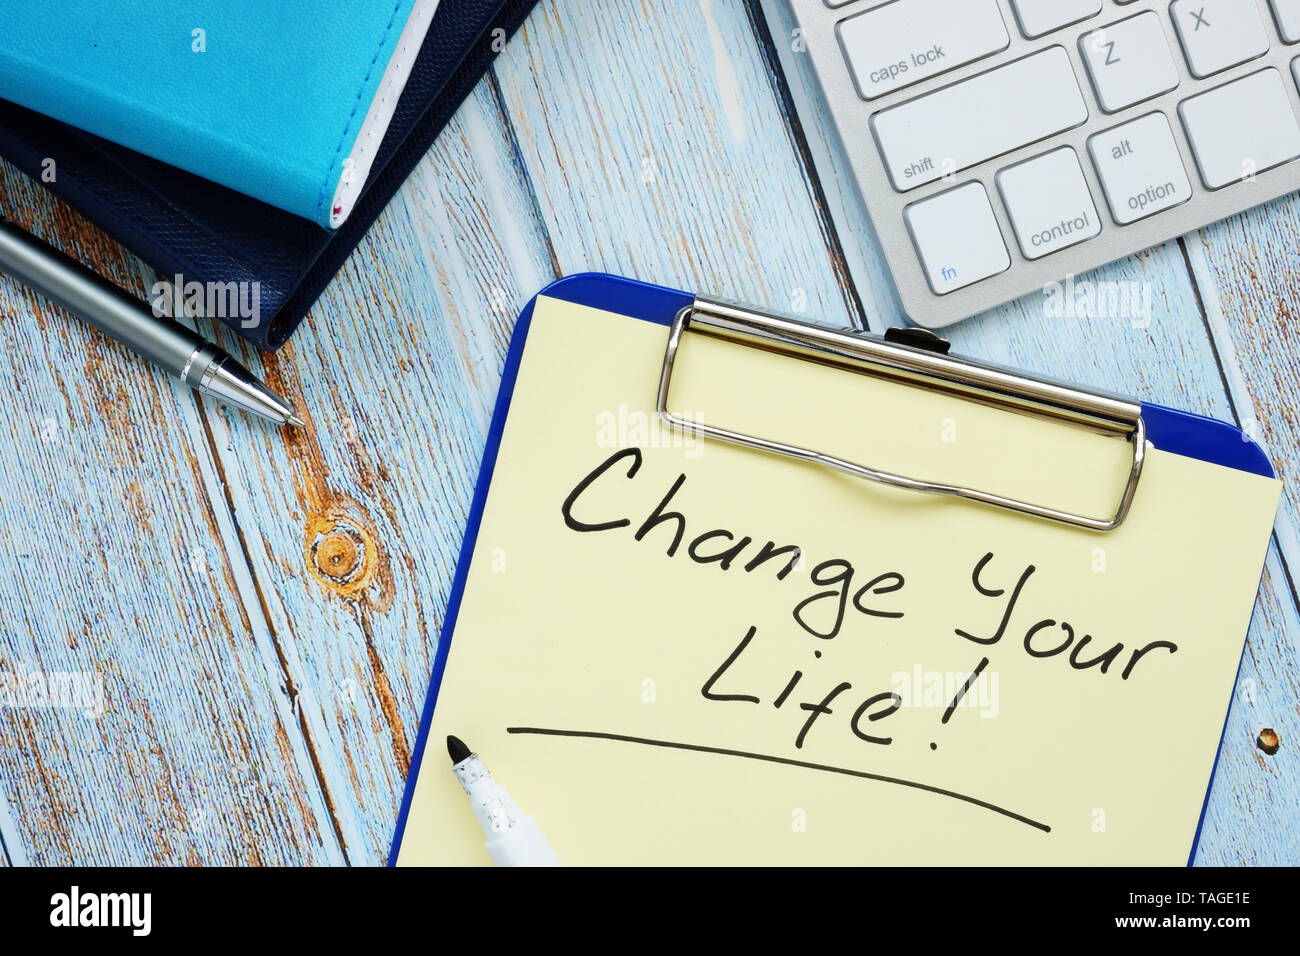 Ändern Sie Ihr Leben - Motivation Zitat handschriftlich auf einem Blatt Papier. Stockfoto